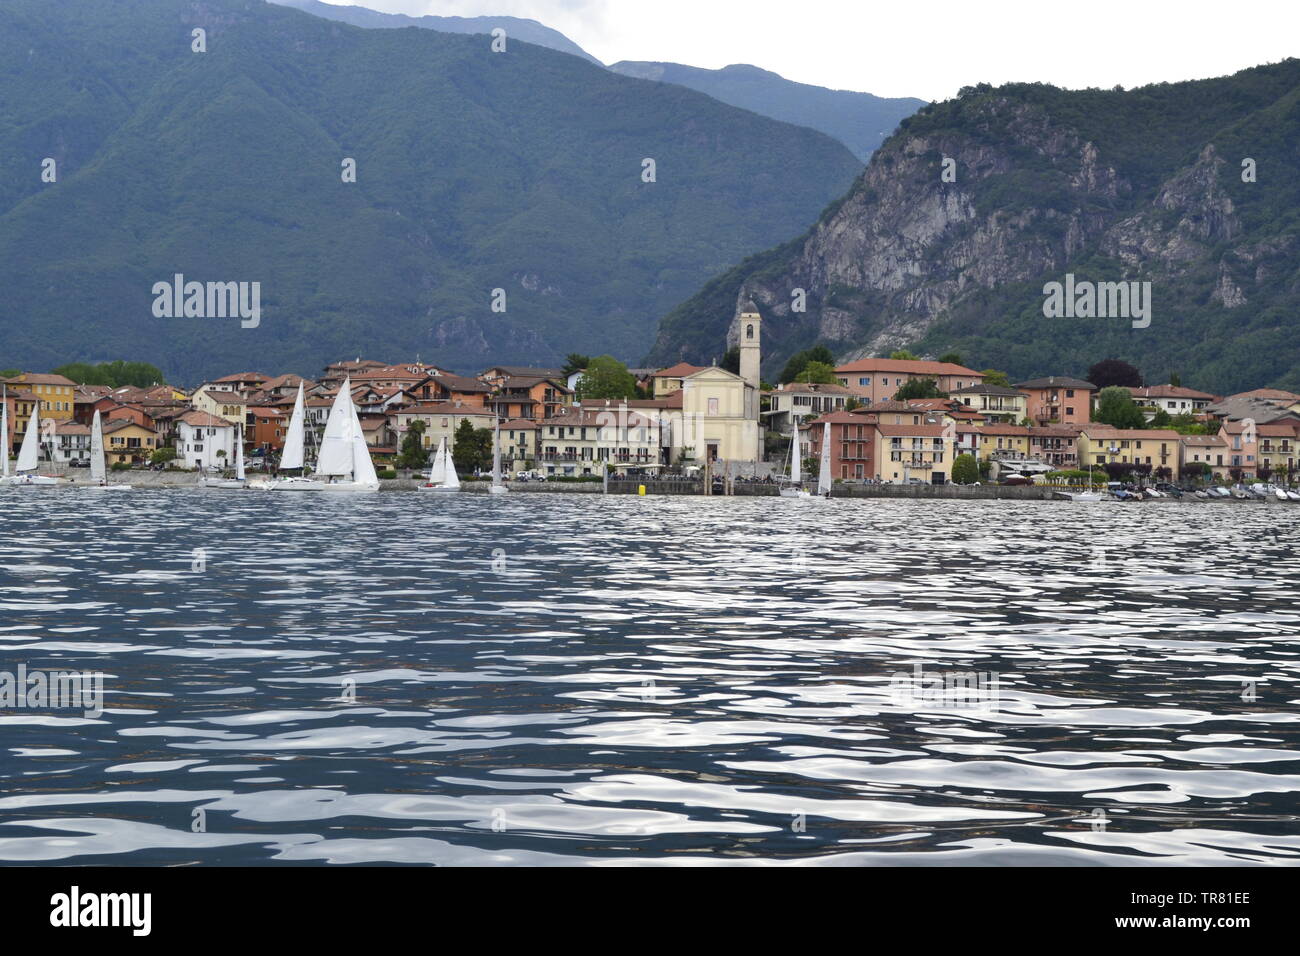 Lago Maggiore / Italien / Fluss / Aussicht / Boromäische Inseln / Isolo Madre / Tresa / Melezza Lake Maggiore / Italy / River / View / Boromean Island Stock Photo